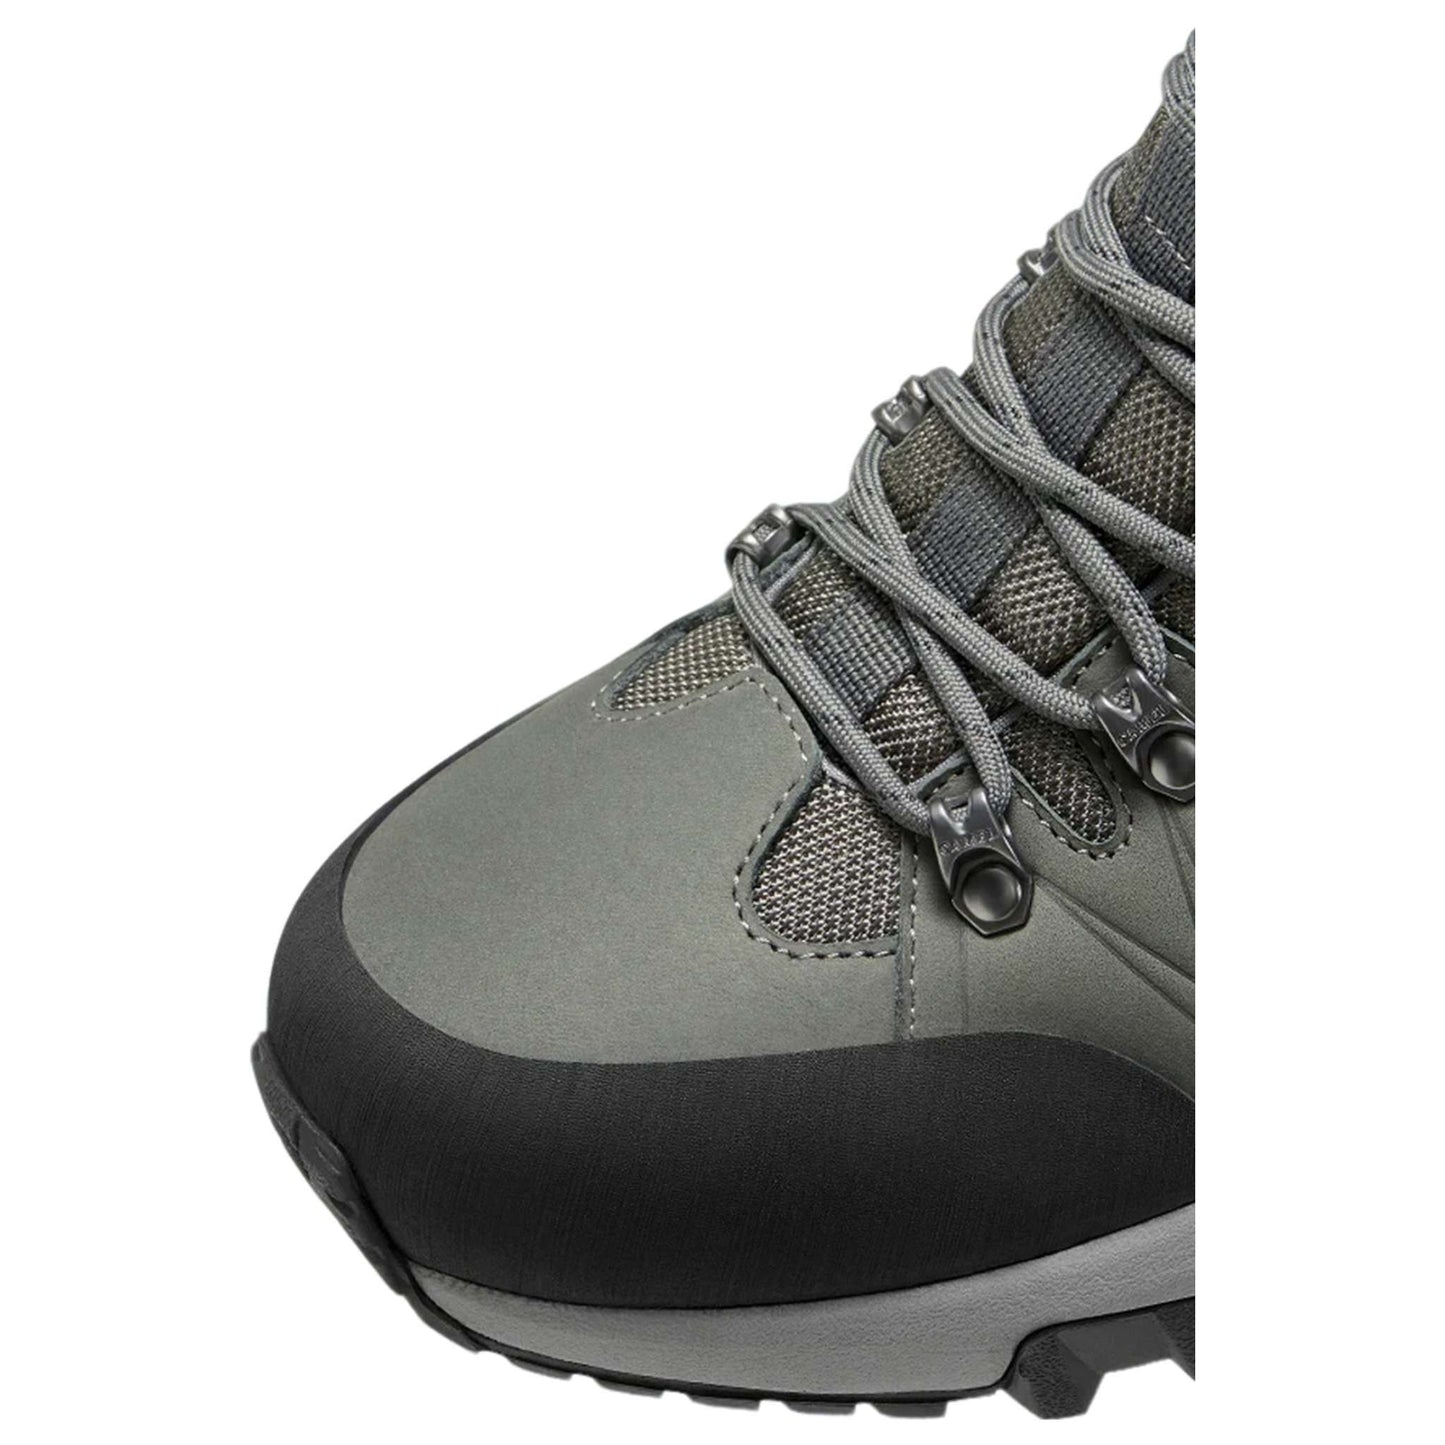 Men's Waterproof Hiking Boots – Non-Slip Trekking Footwear with Durable Vibram Soles